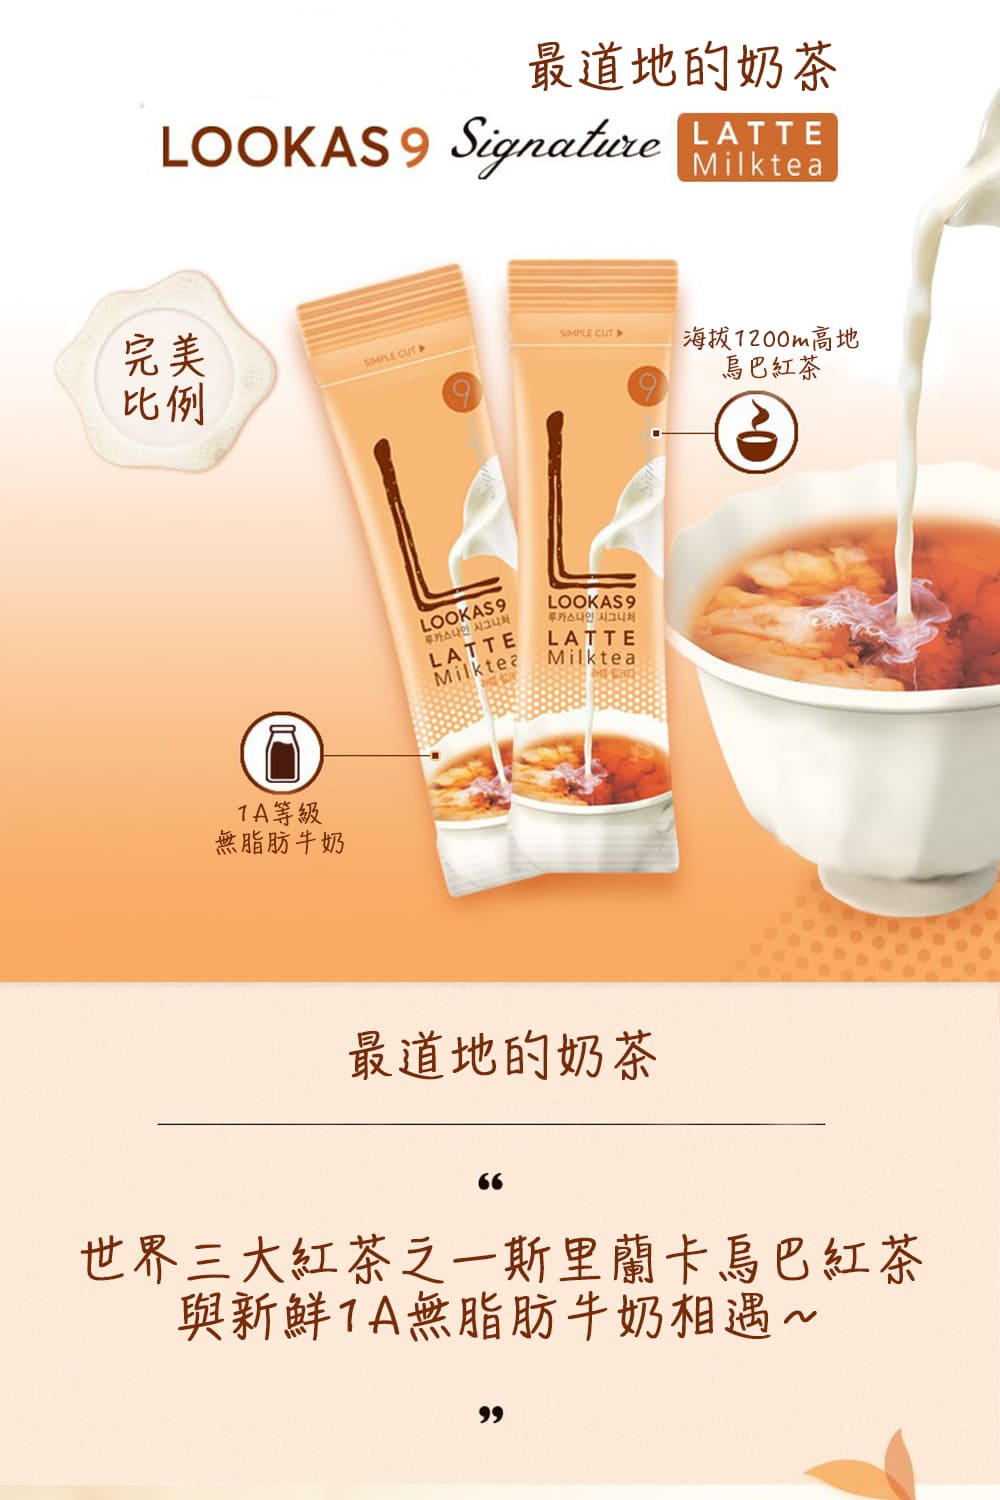 Lookas9 紅茶拿鐵(17.5g/30入)評價推薦